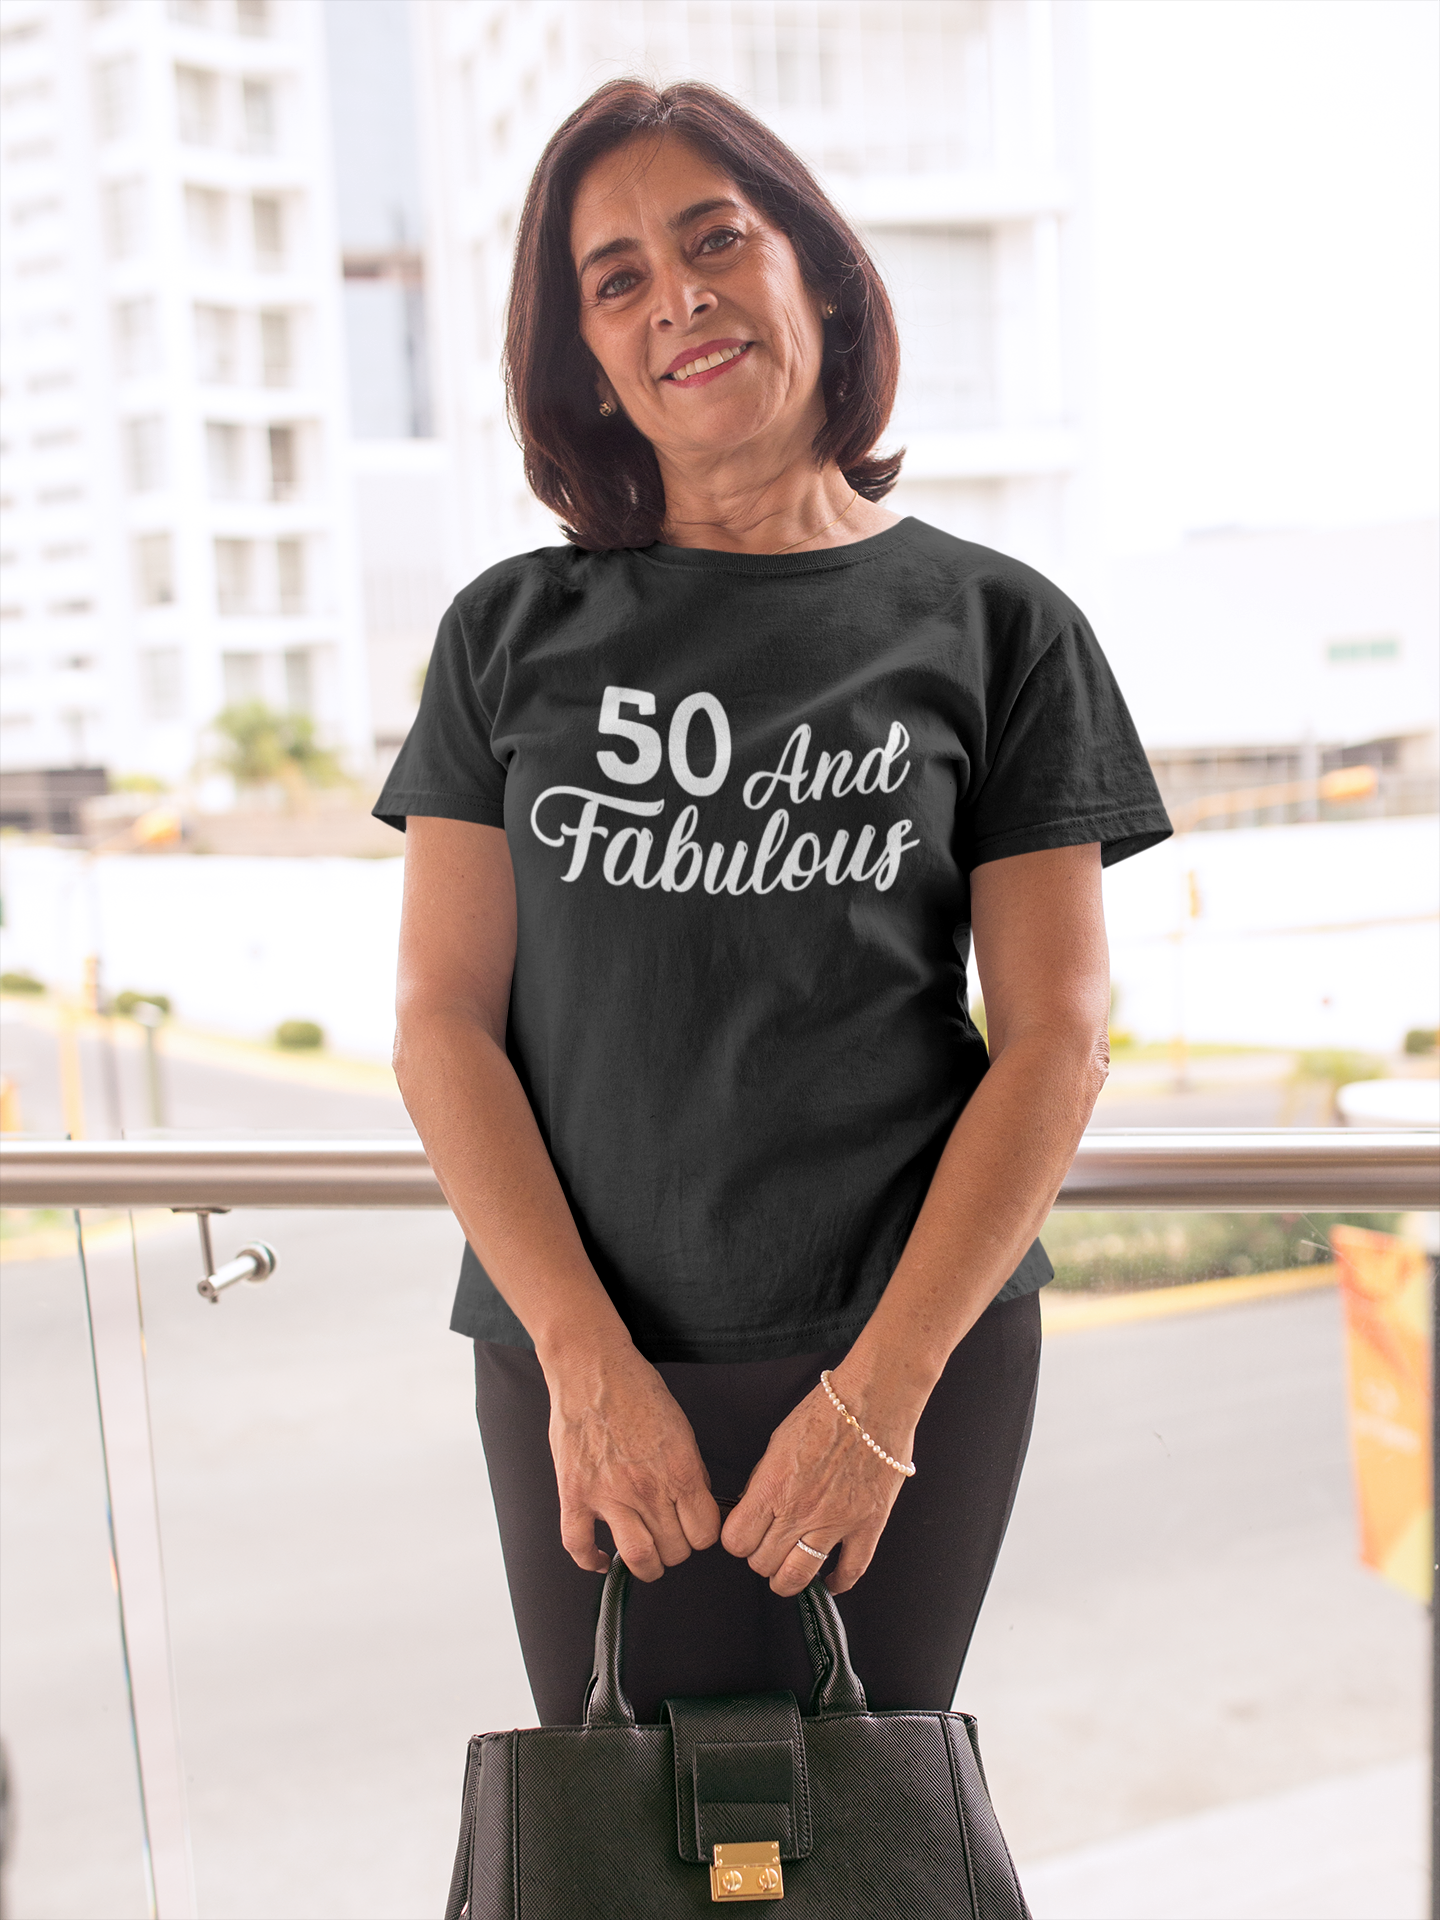 50 and Fabulous, Womenshirt, Motivational Shirt, Inspirational Shirt, Positive Shirts, Gift Ideas for Women, Gift Ideas for Men